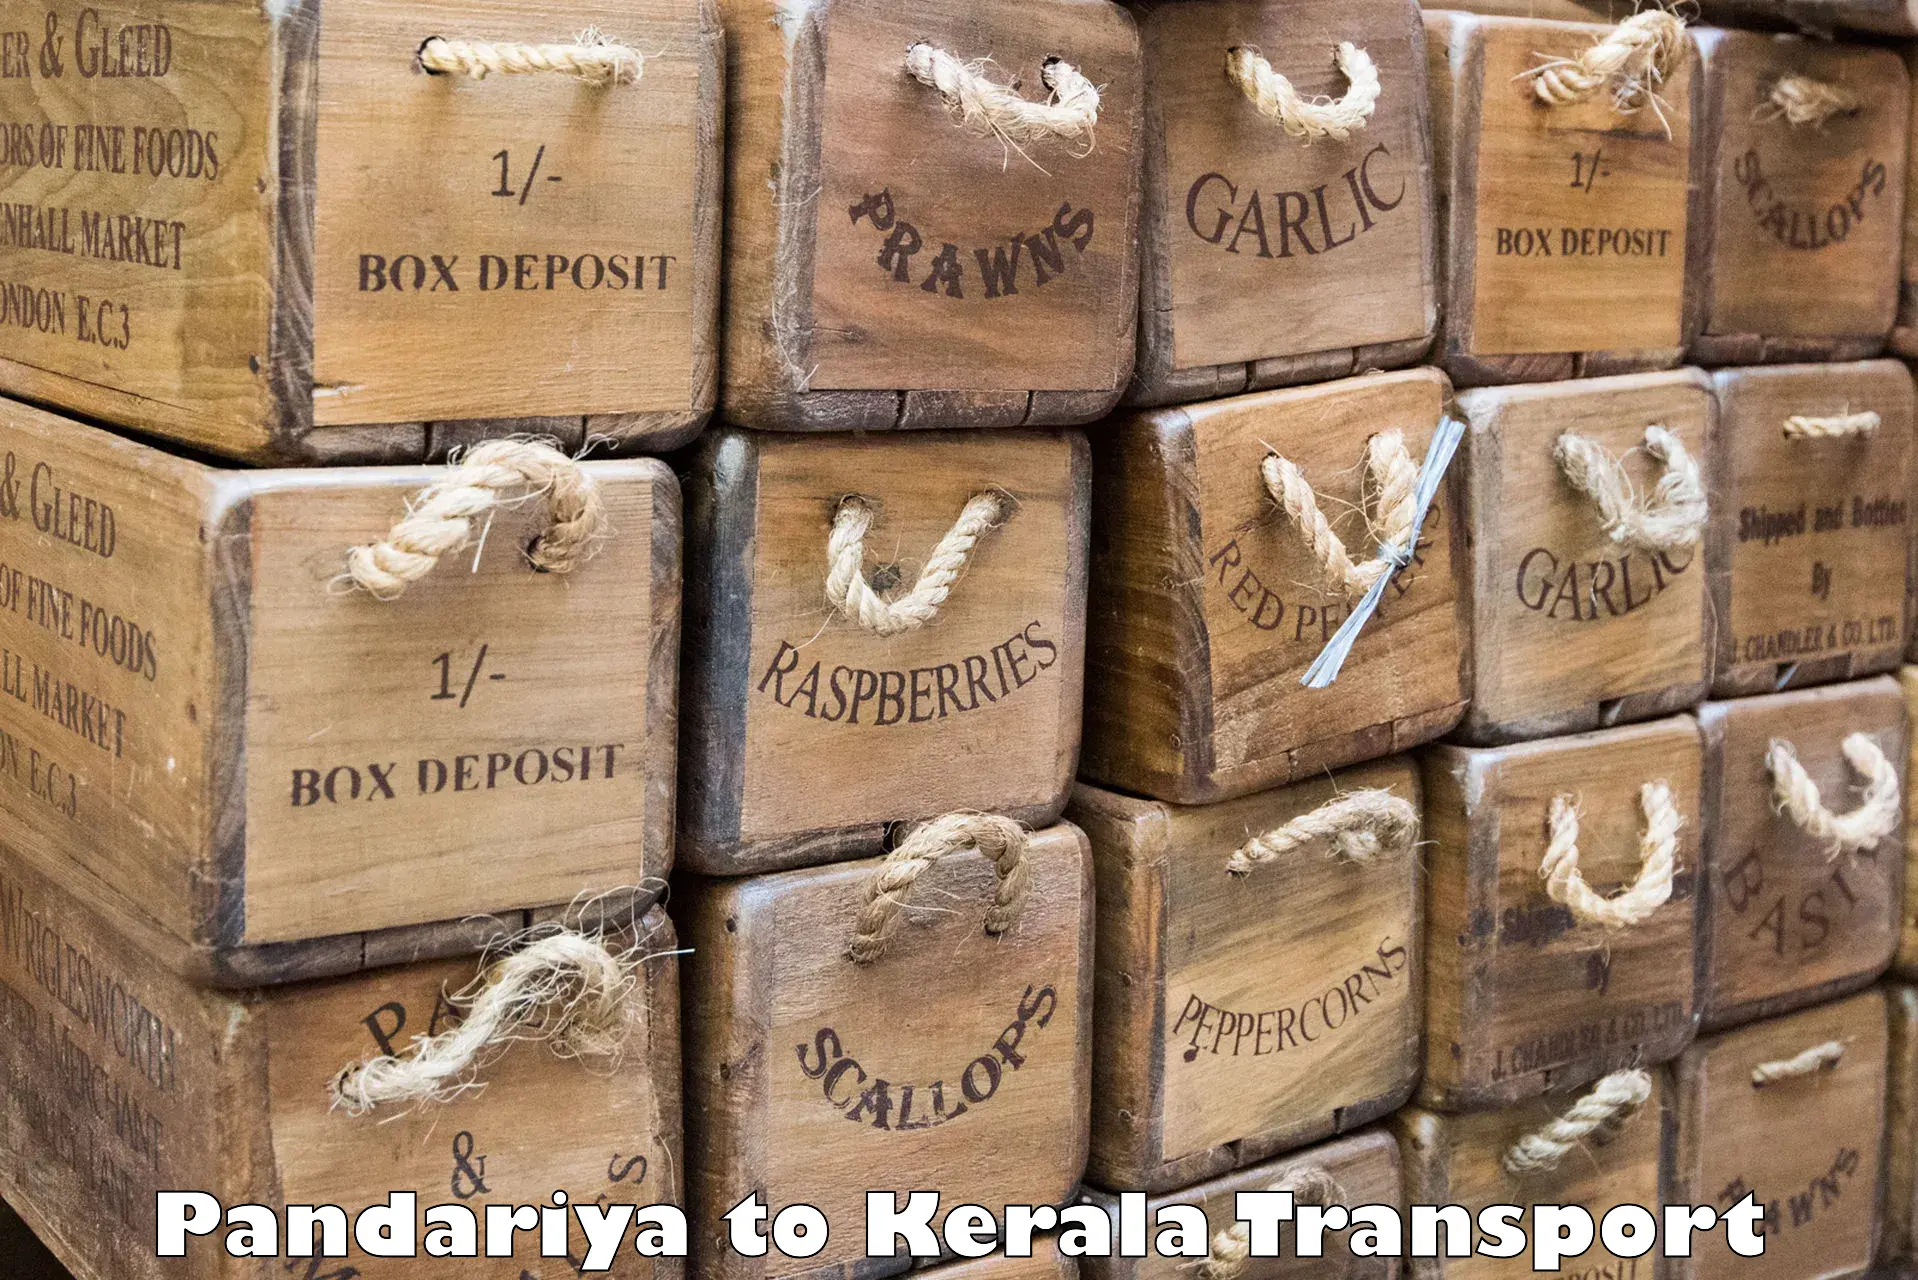 Nearby transport service Pandariya to Kuttikol